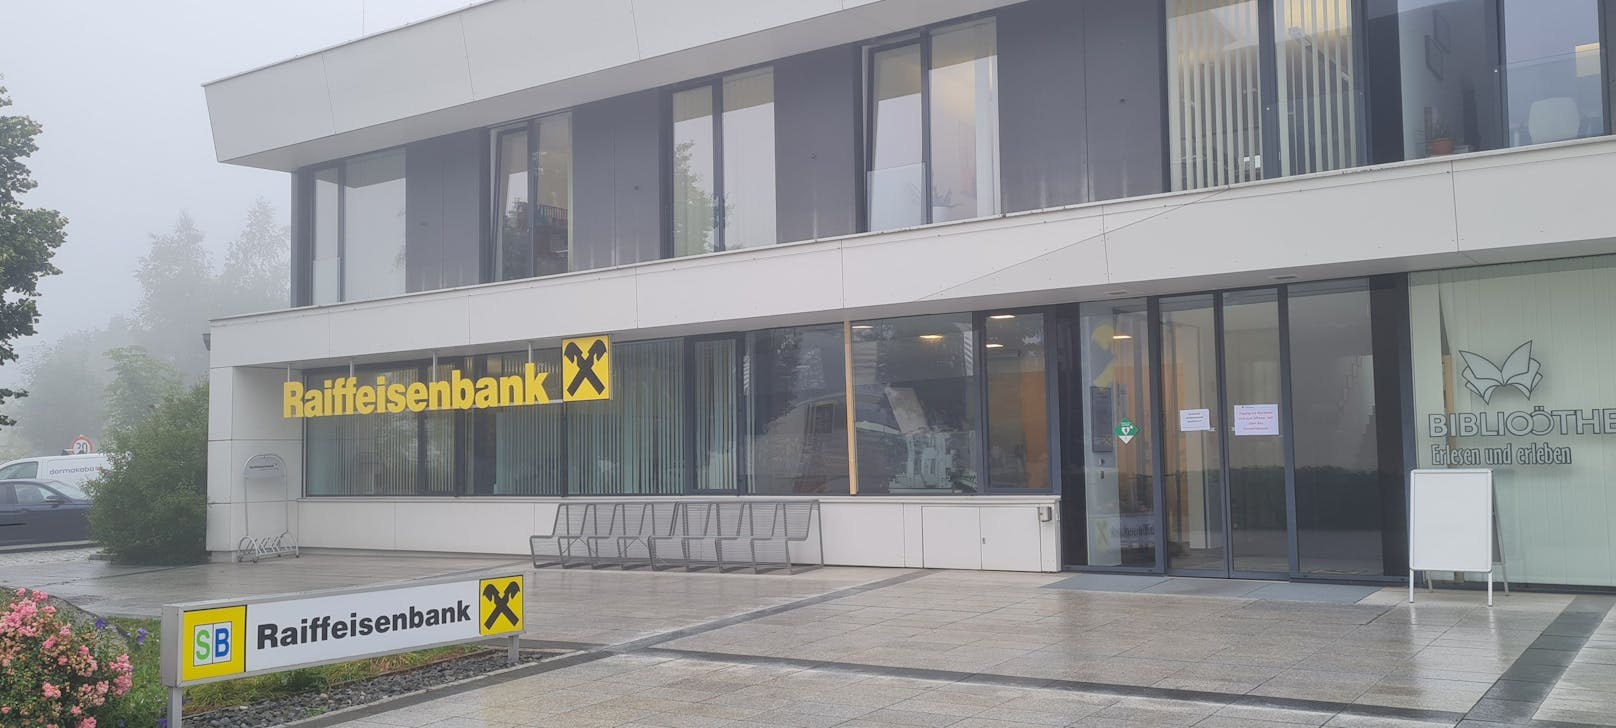 In dieser Bank-Filiale in St. Stefan am Walde (Bez. Rohrbach) wurde ein Bankomat gesprengt.&nbsp;